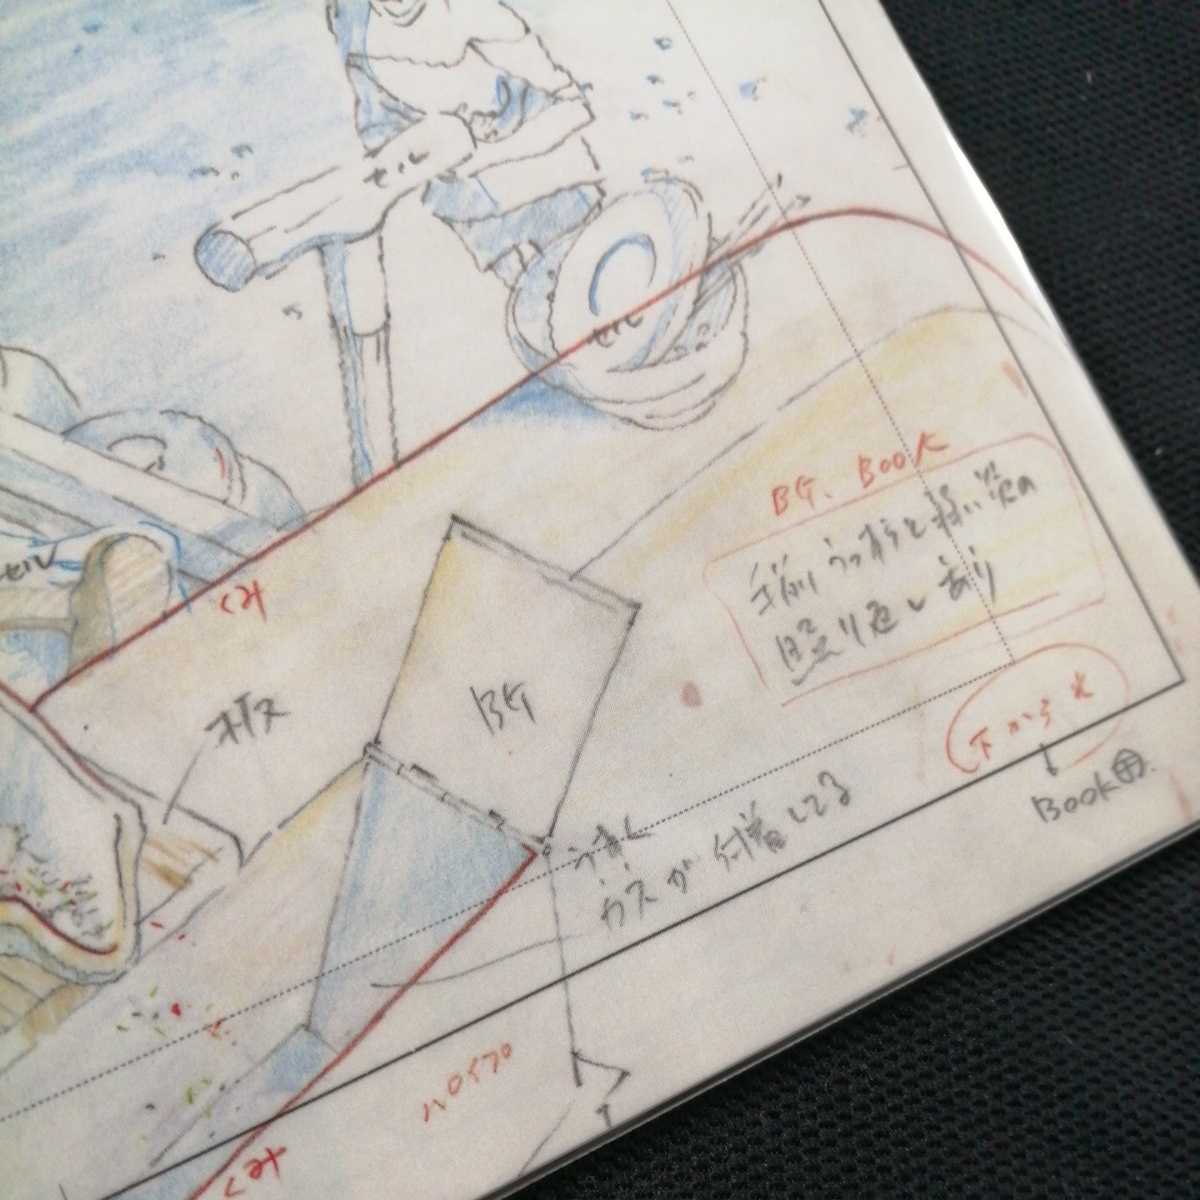  Studio Ghibli тысяч . тысяч .. бог .. расположение порез . осмотр ) Ghibli открытка постер исходная картина цифровая картинка расположение выставка Miyazaki .b